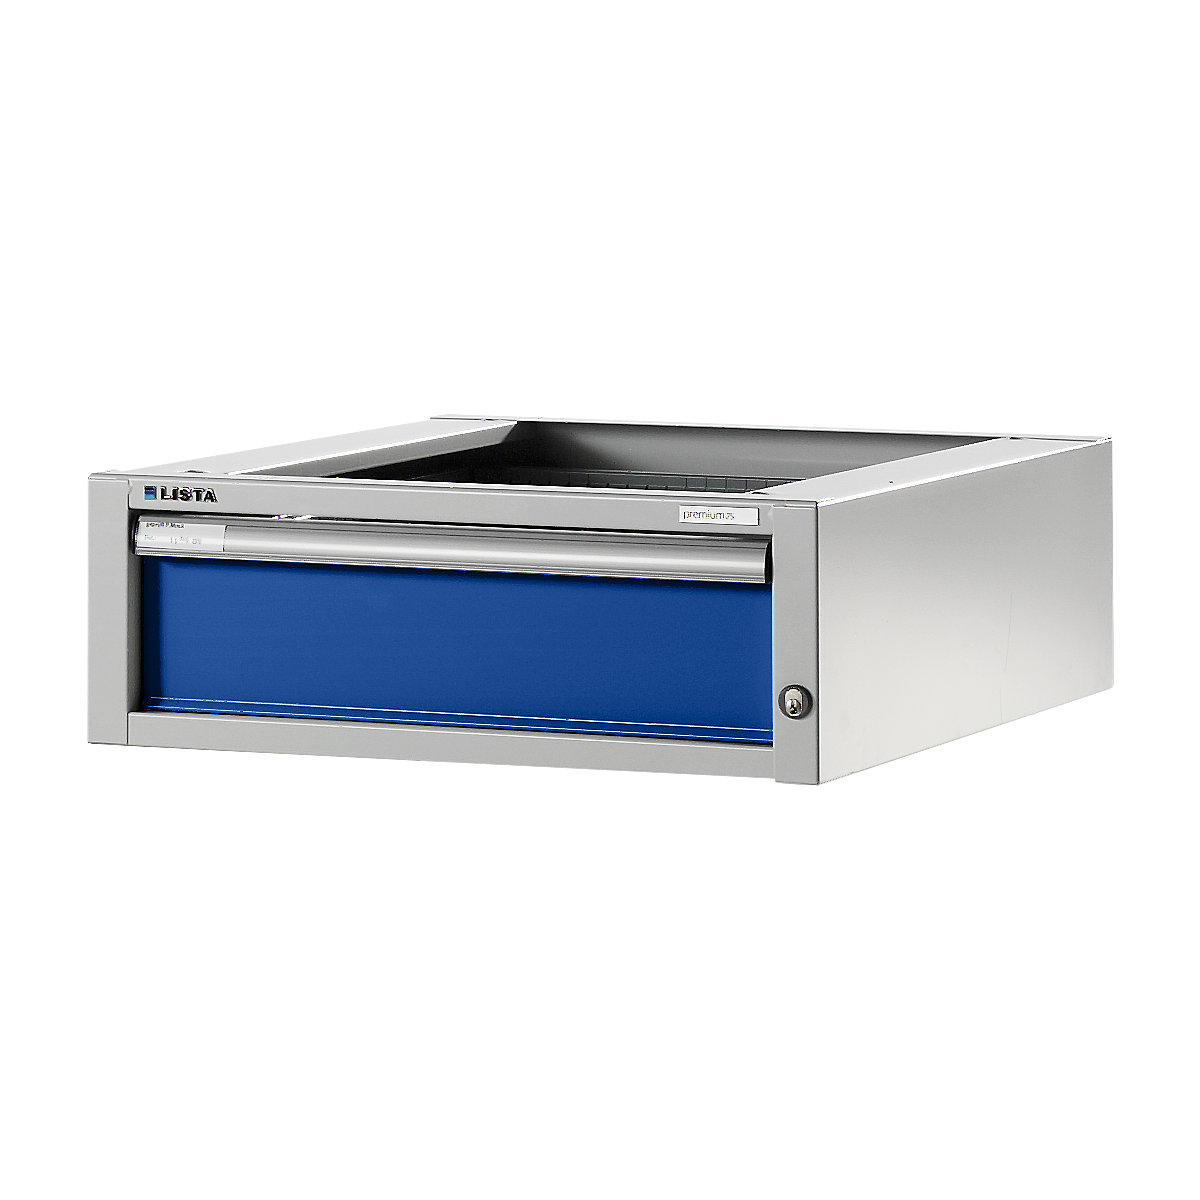 Modulni sistem za delovne mize, spodnja omarica – LISTA, višina 204 mm, 1 predal, encijan modra-5